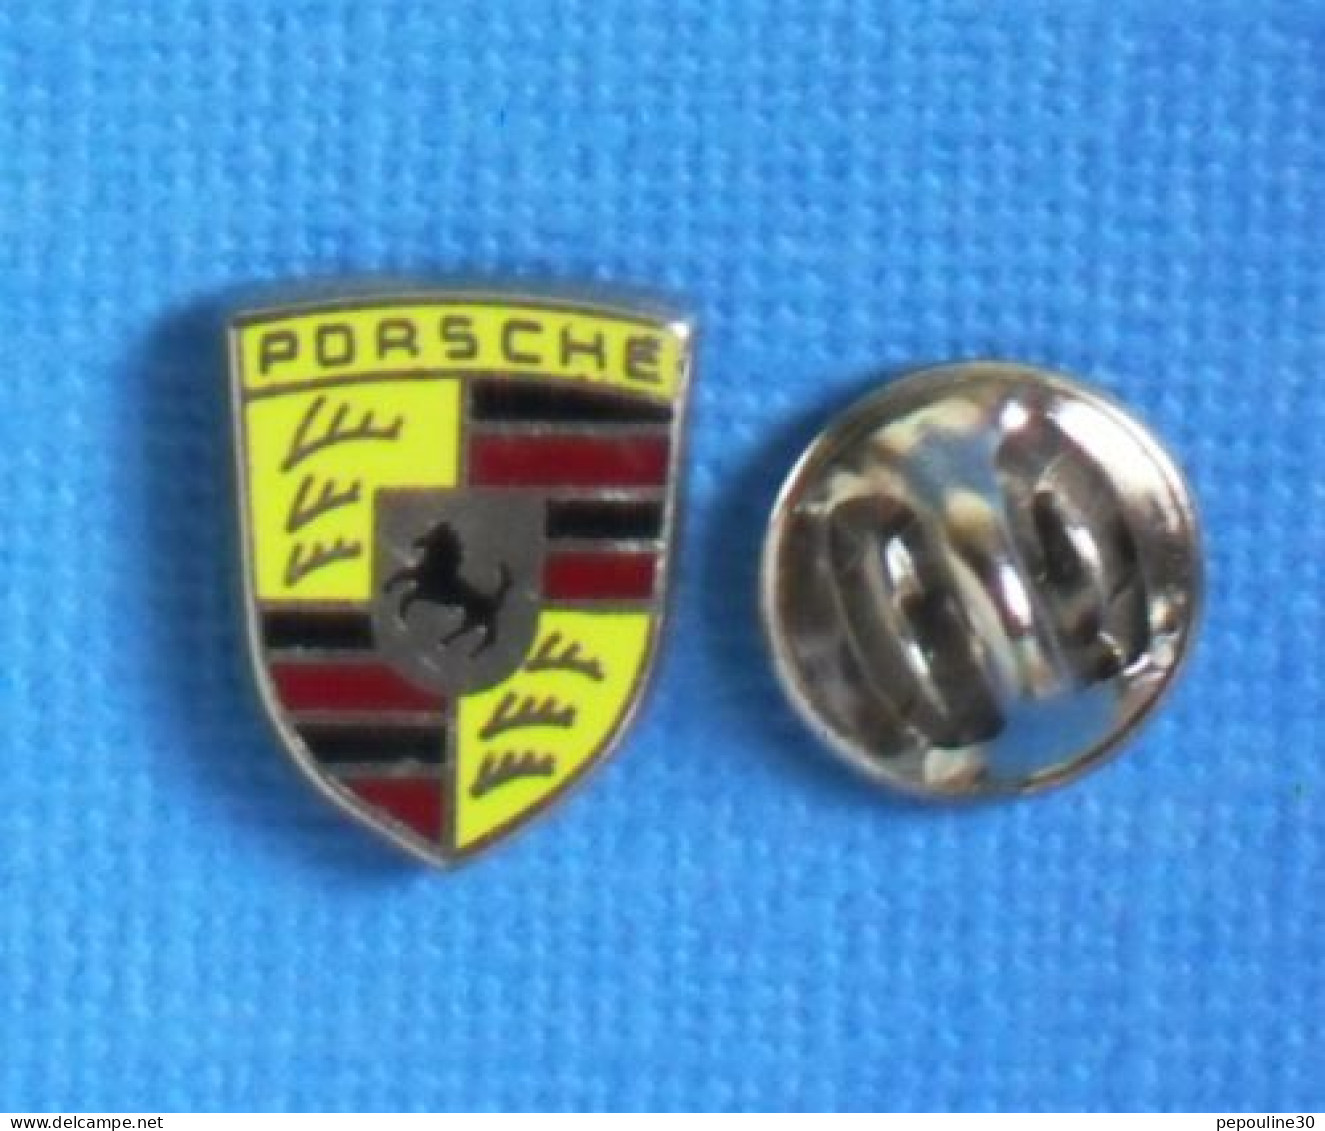 1 PIN'S //  ** LOGO / BLASON / PORSCHE ** - Porsche